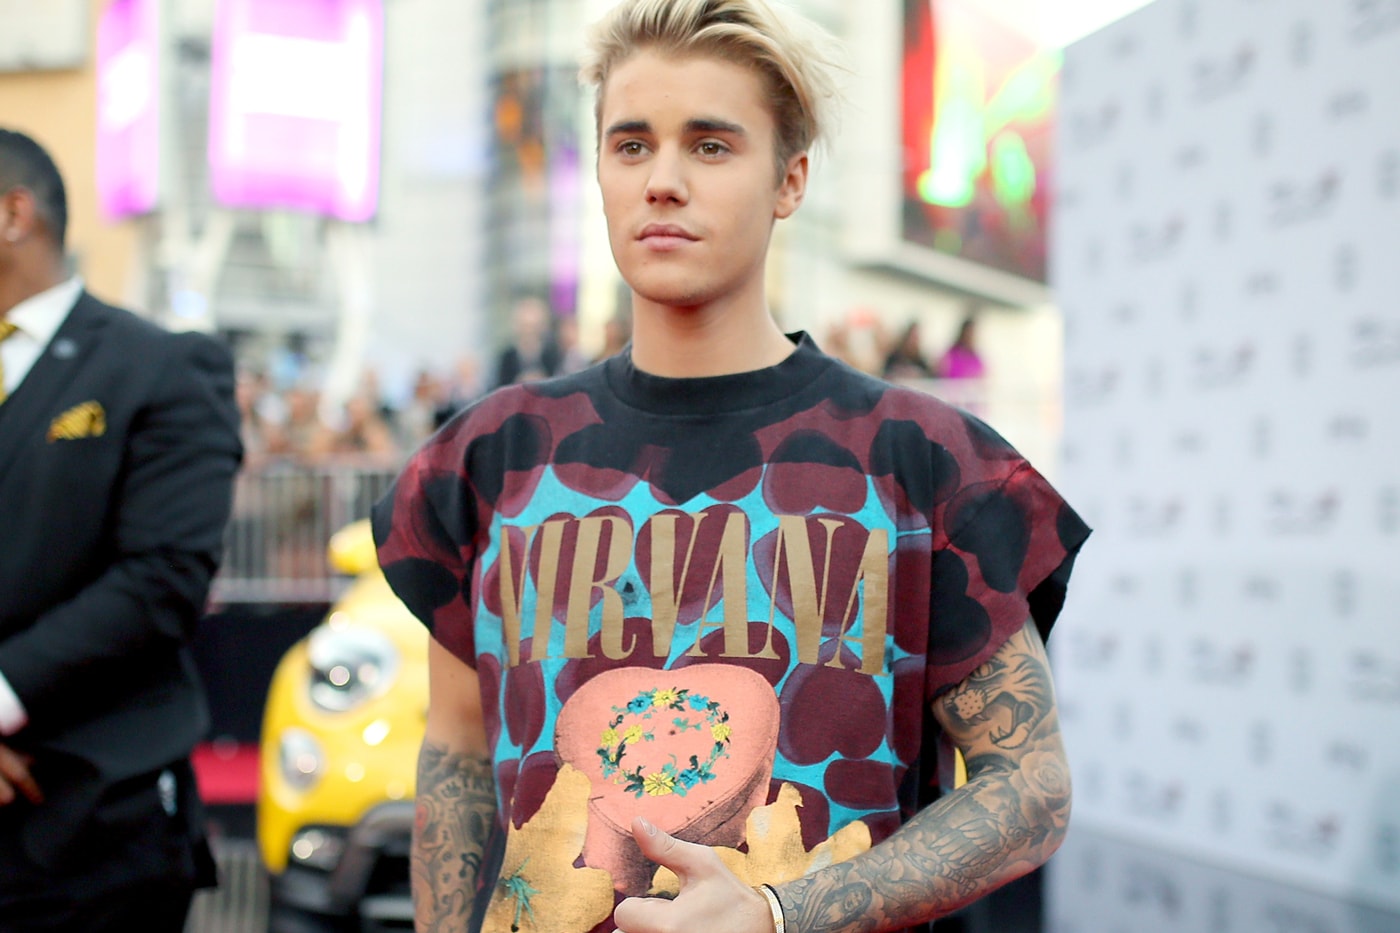 Justin Bieber Covered Tattoos, Shared Underwear Video